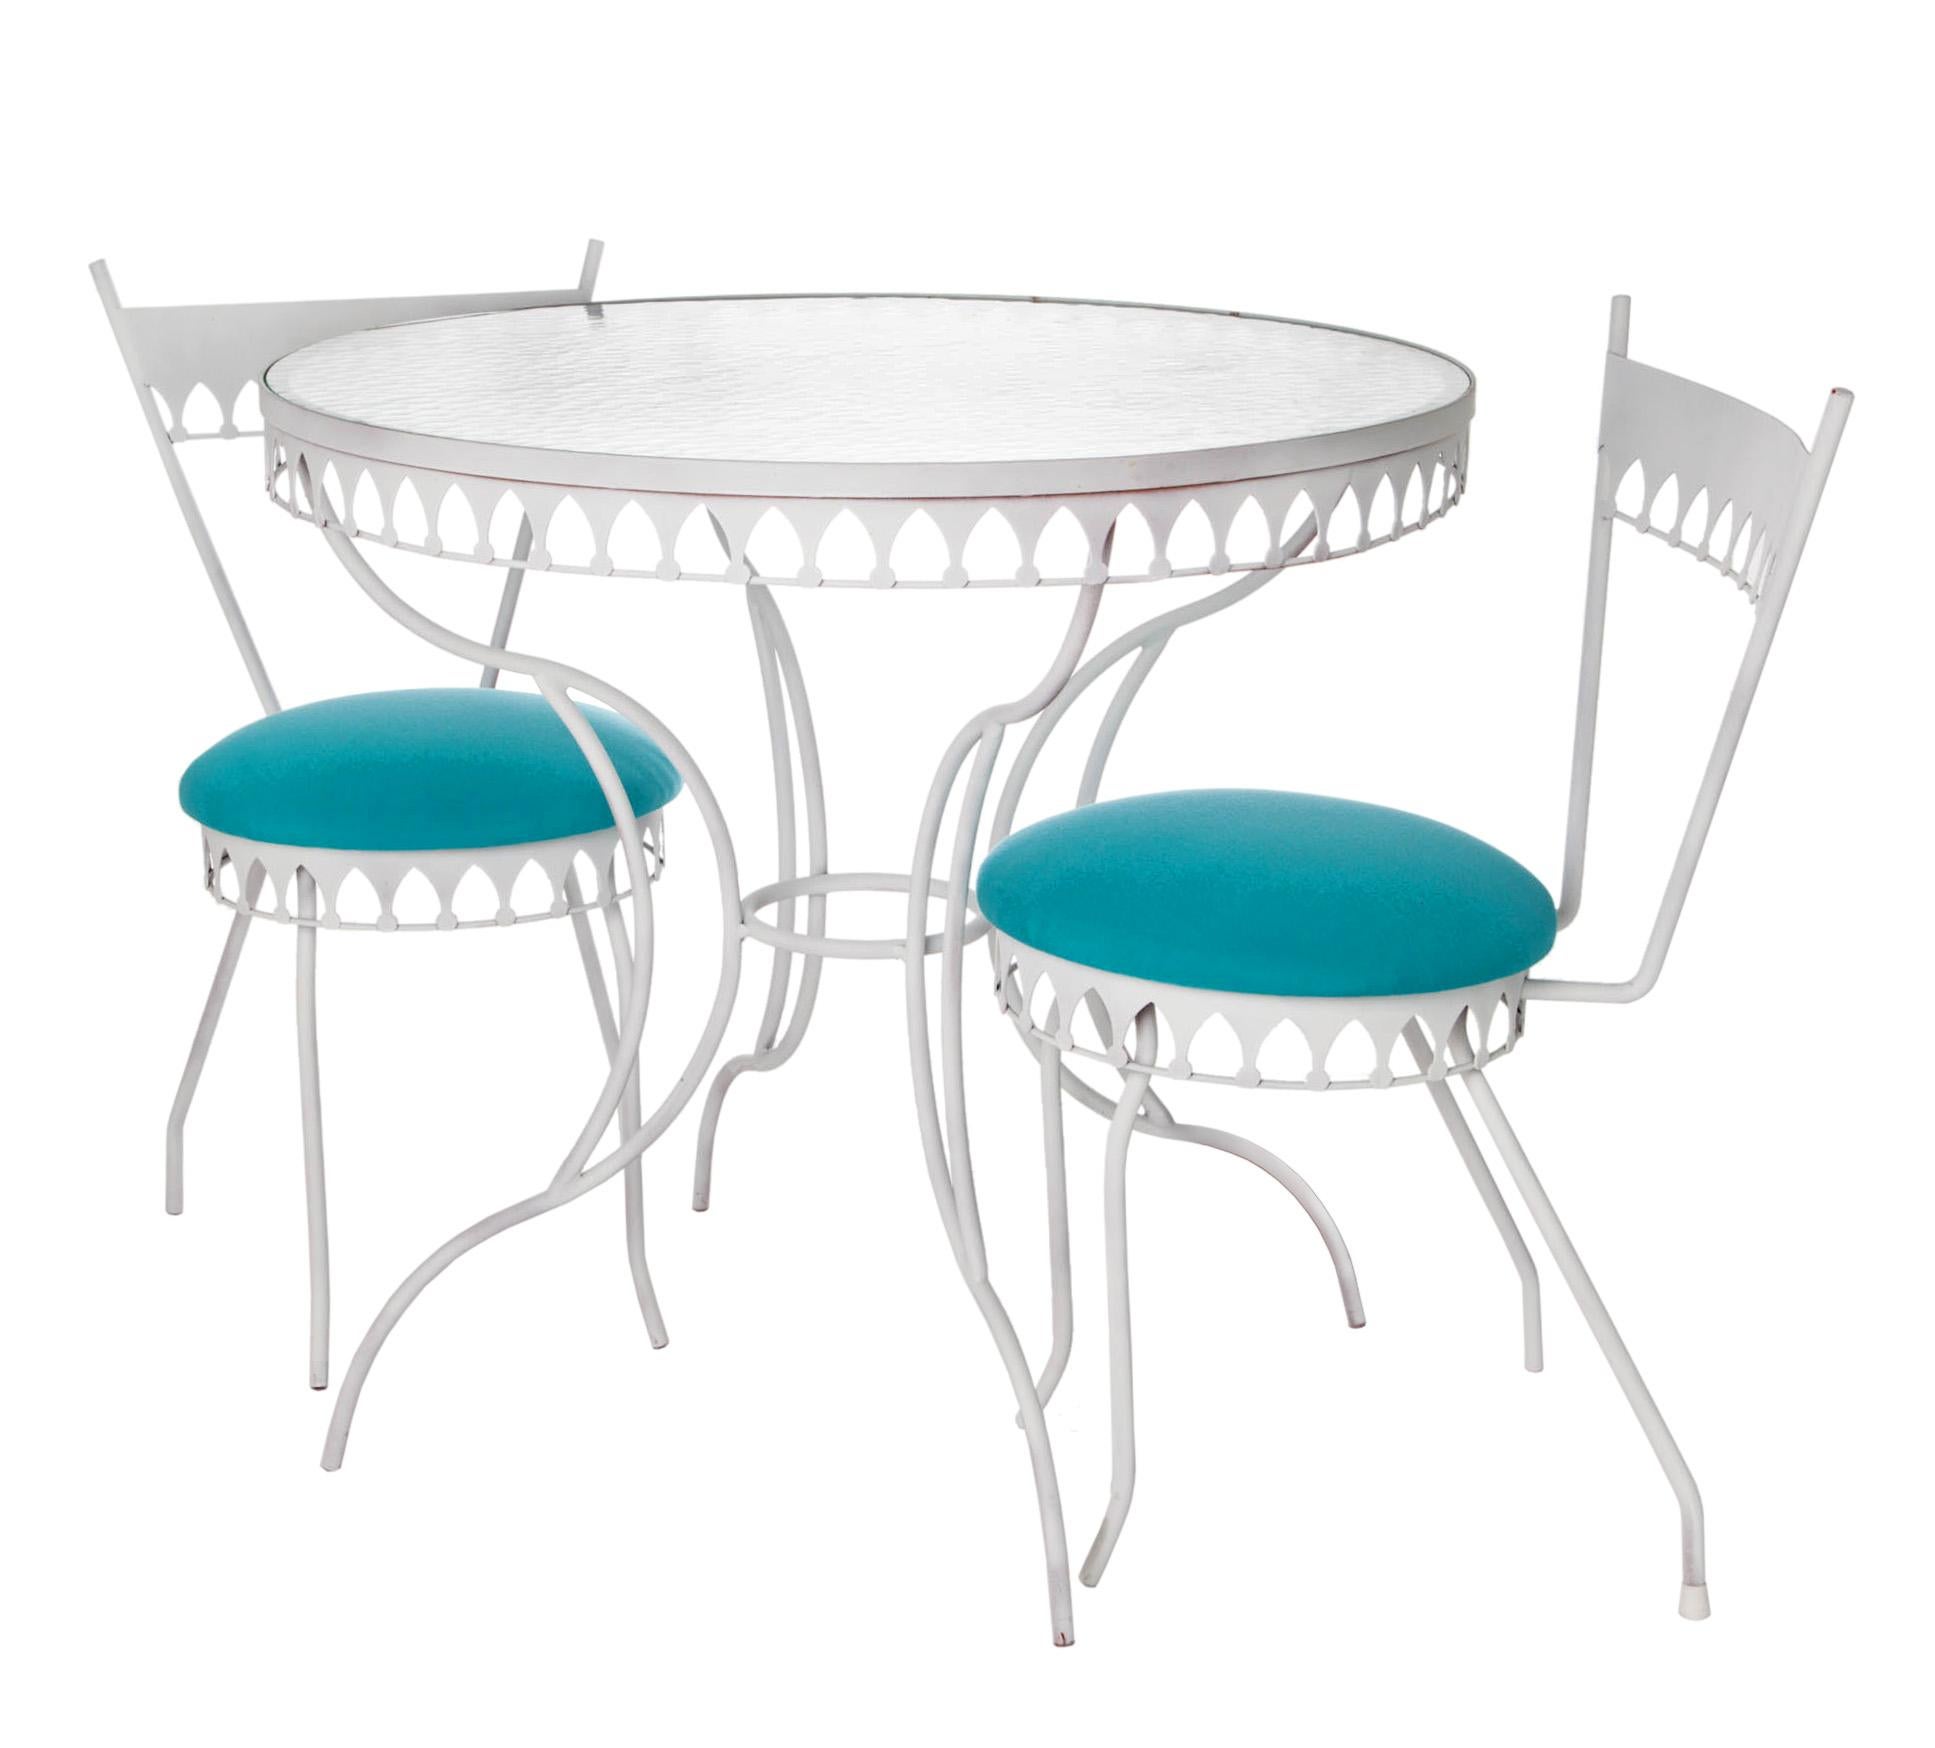 Ikonischer Cafétisch aus der Mitte des Jahrhunderts im maurischen Stil mit zwei kleinen Stühlen, gepolstert mit Sunbrella in Aqua.
Perfektes Set für einen Balkon oder einen anderen engen Raum. Die beiden zierlichen Stühle haben eine  runder Rücken,